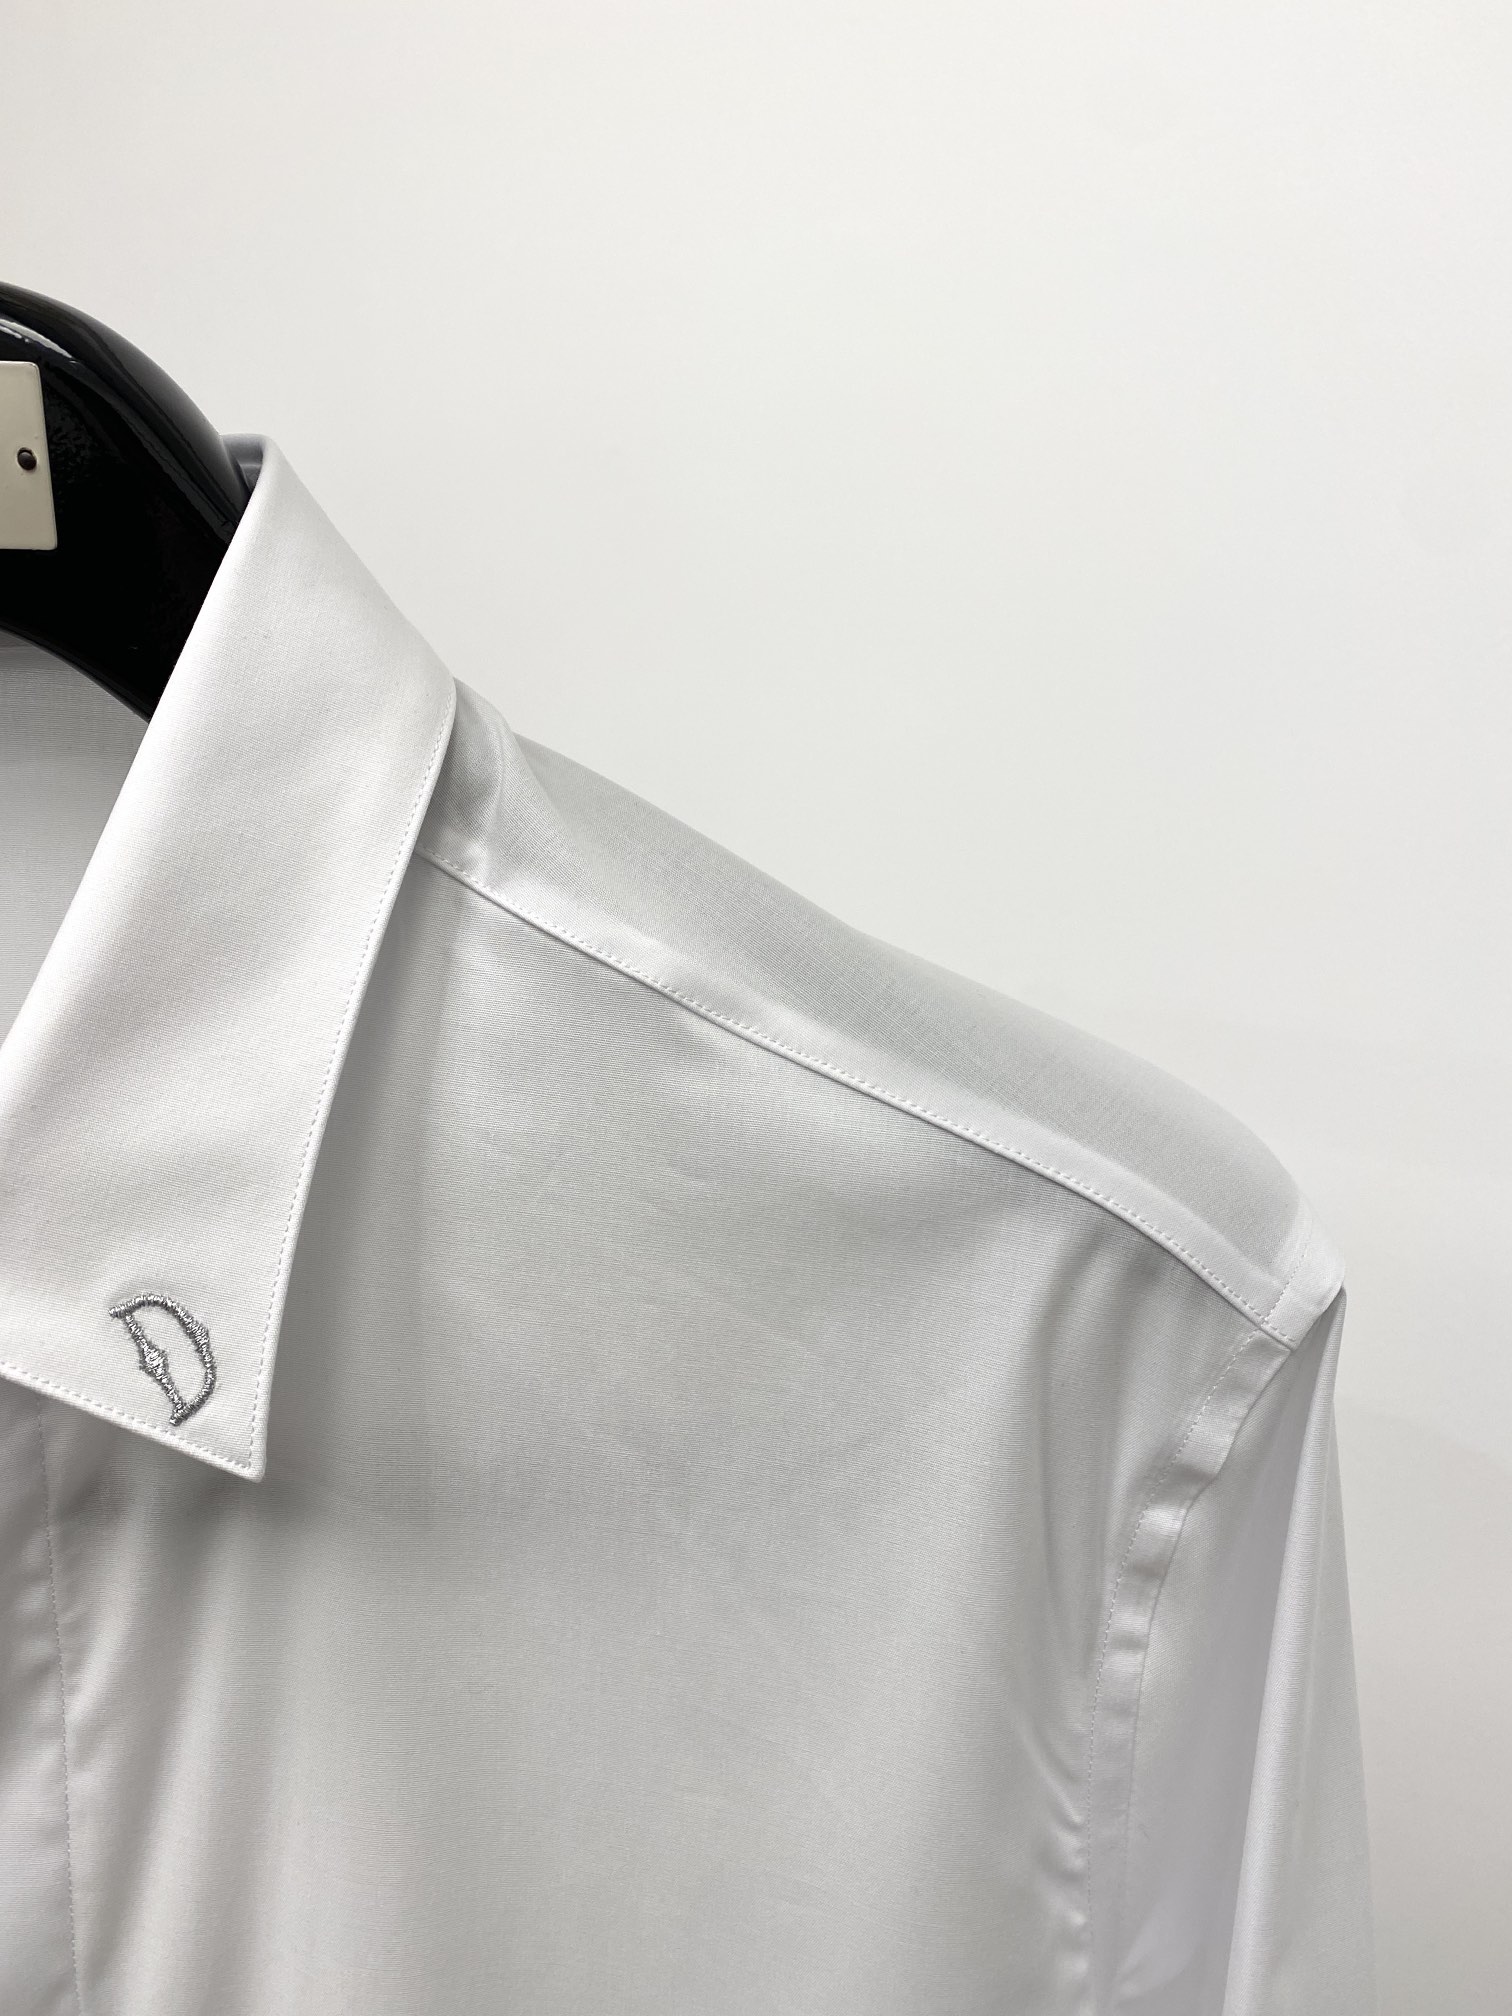 迪奥2024新款衬衫打造时装艺术感立体剪裁修身版型上身效果很帅气微彰显品位整体细节可以对比效果非常有型码